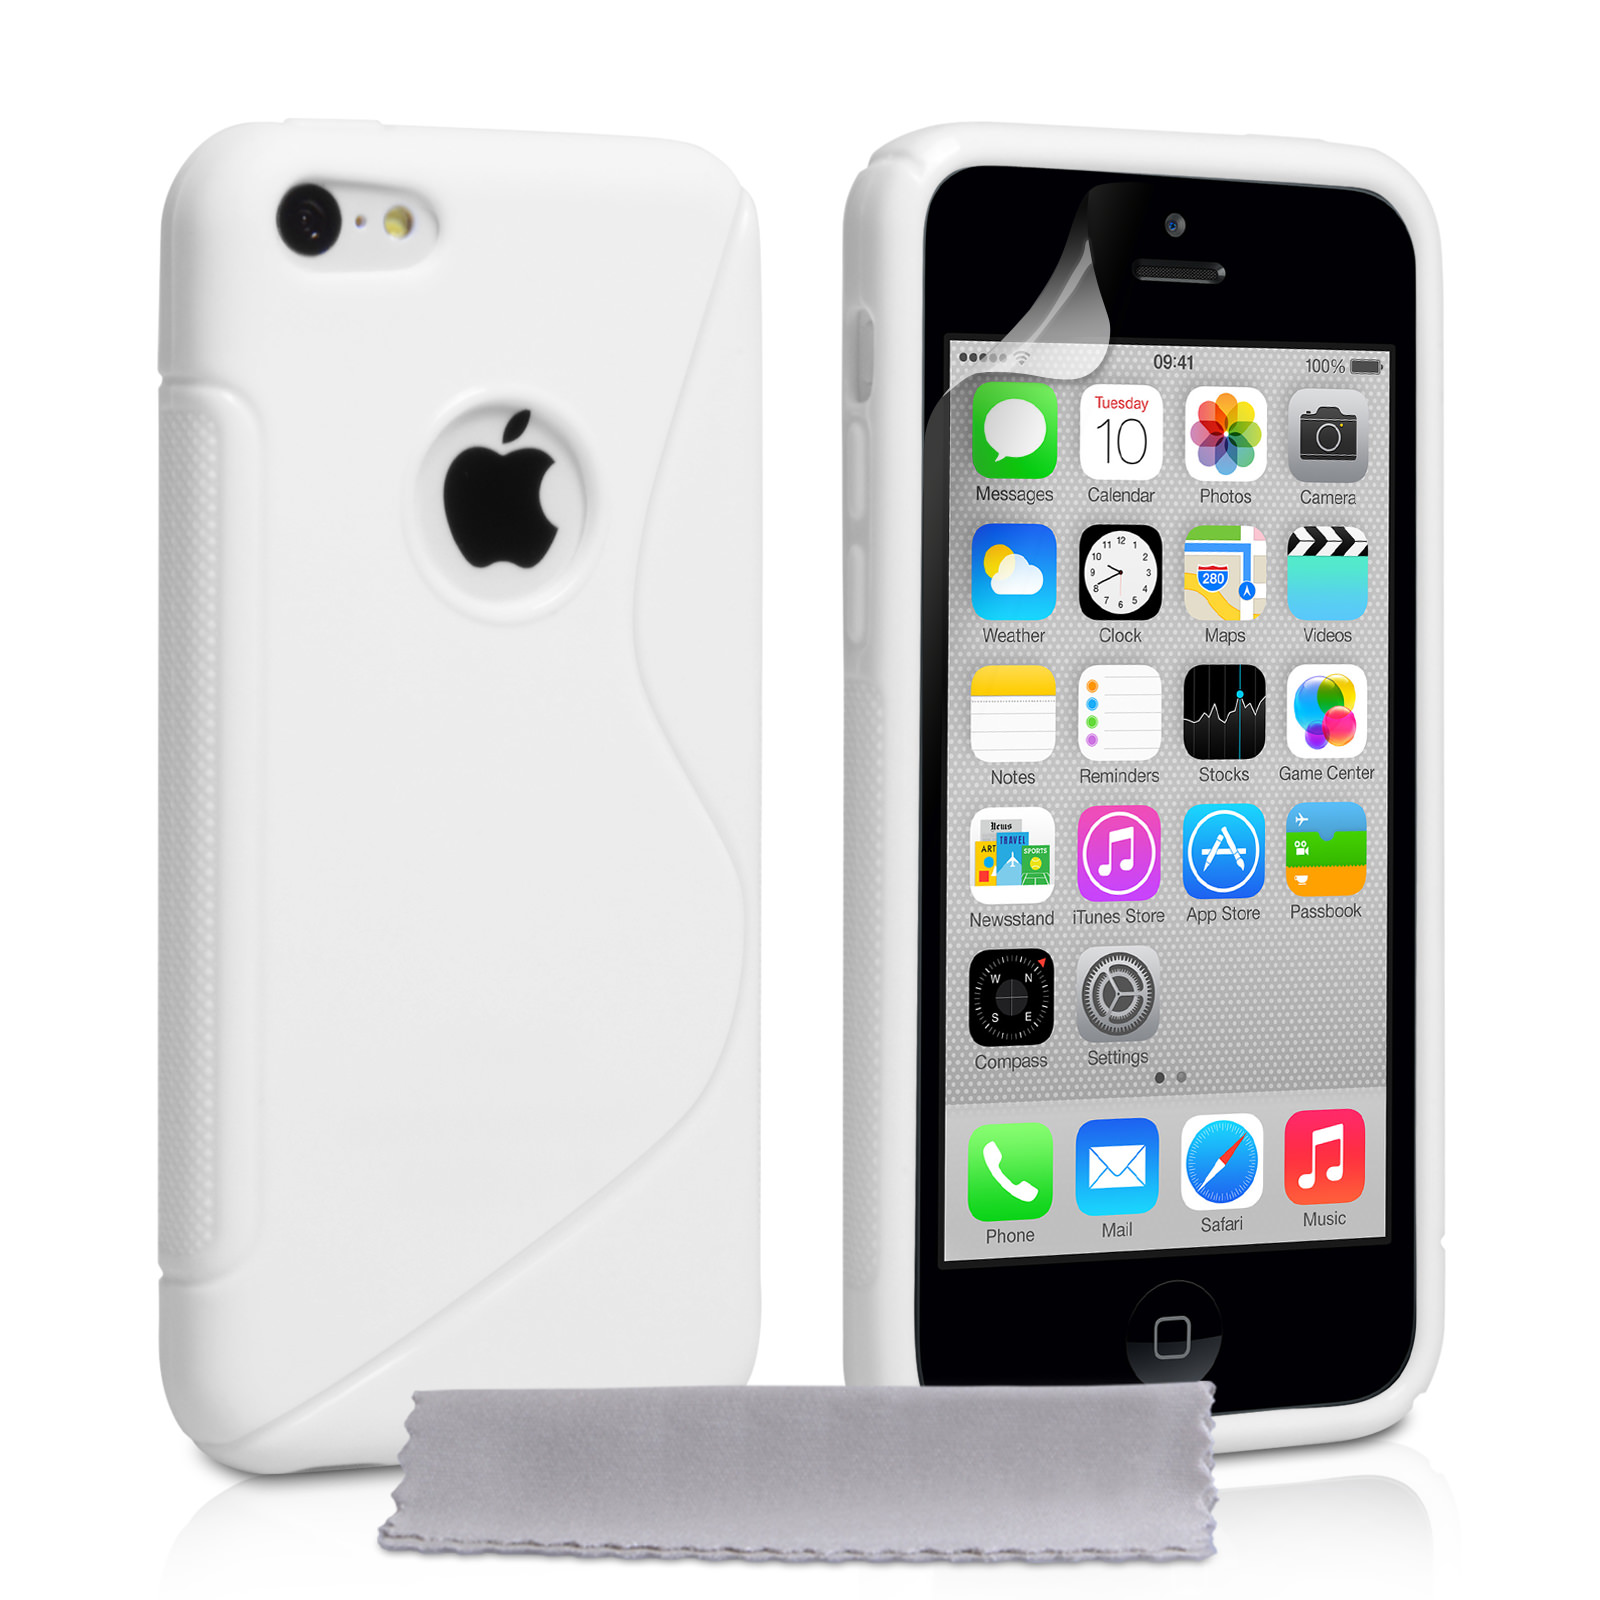 Caseflex iPhone 5c Silicone Gel S-Line Case - White